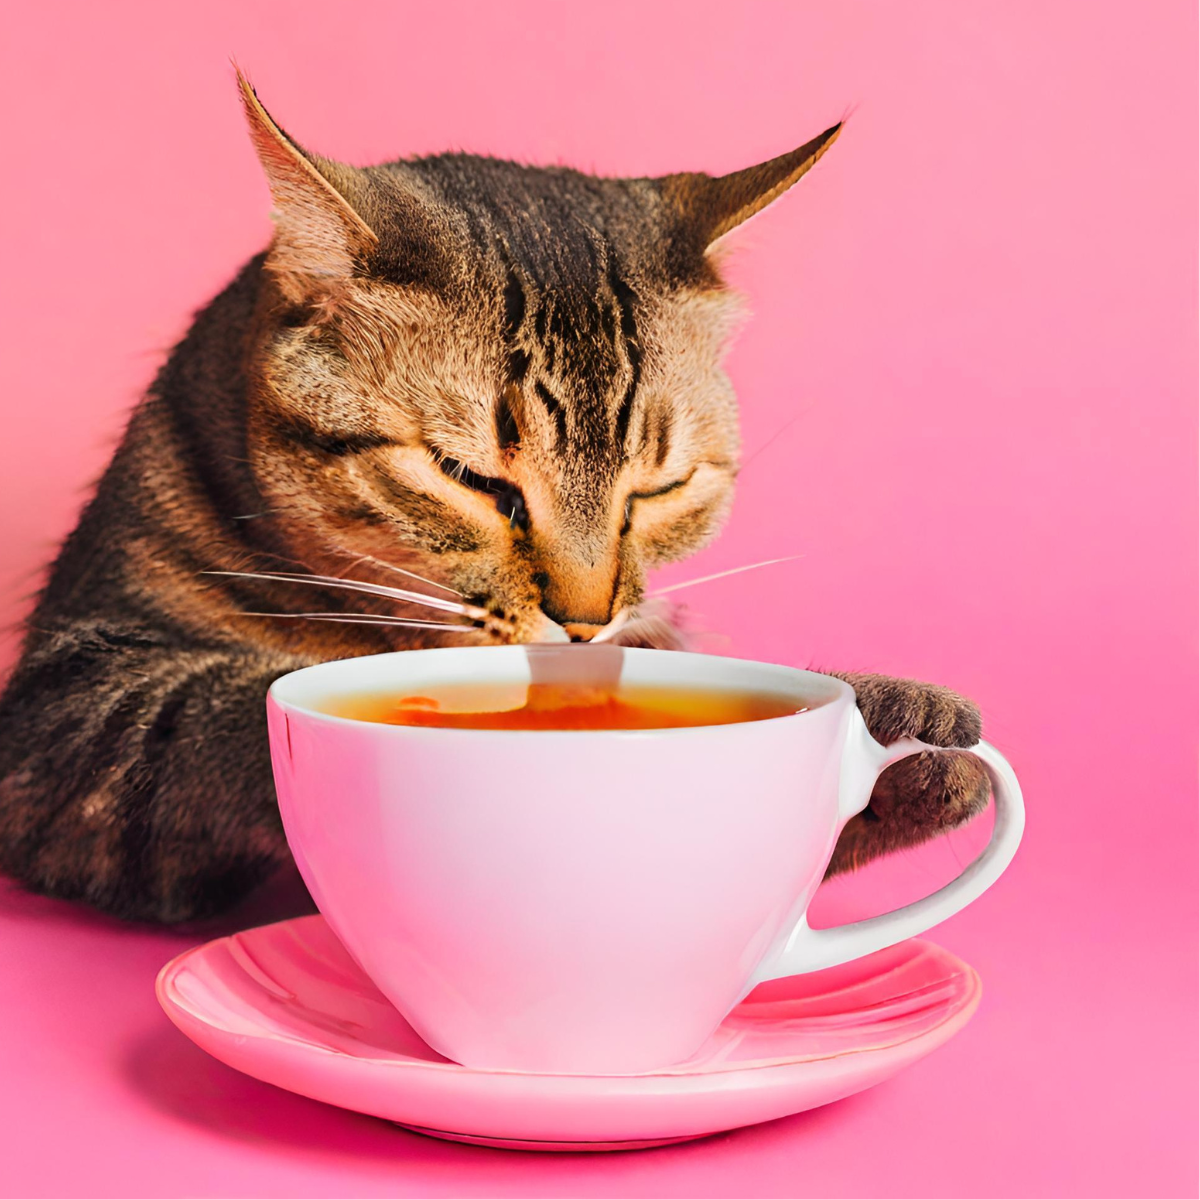 Katze trinkt aus einer Tee Tasse. Da stellt sich die Frage: Dürfen Katzen überhaupt Tee trinken und wenn ja, welche?